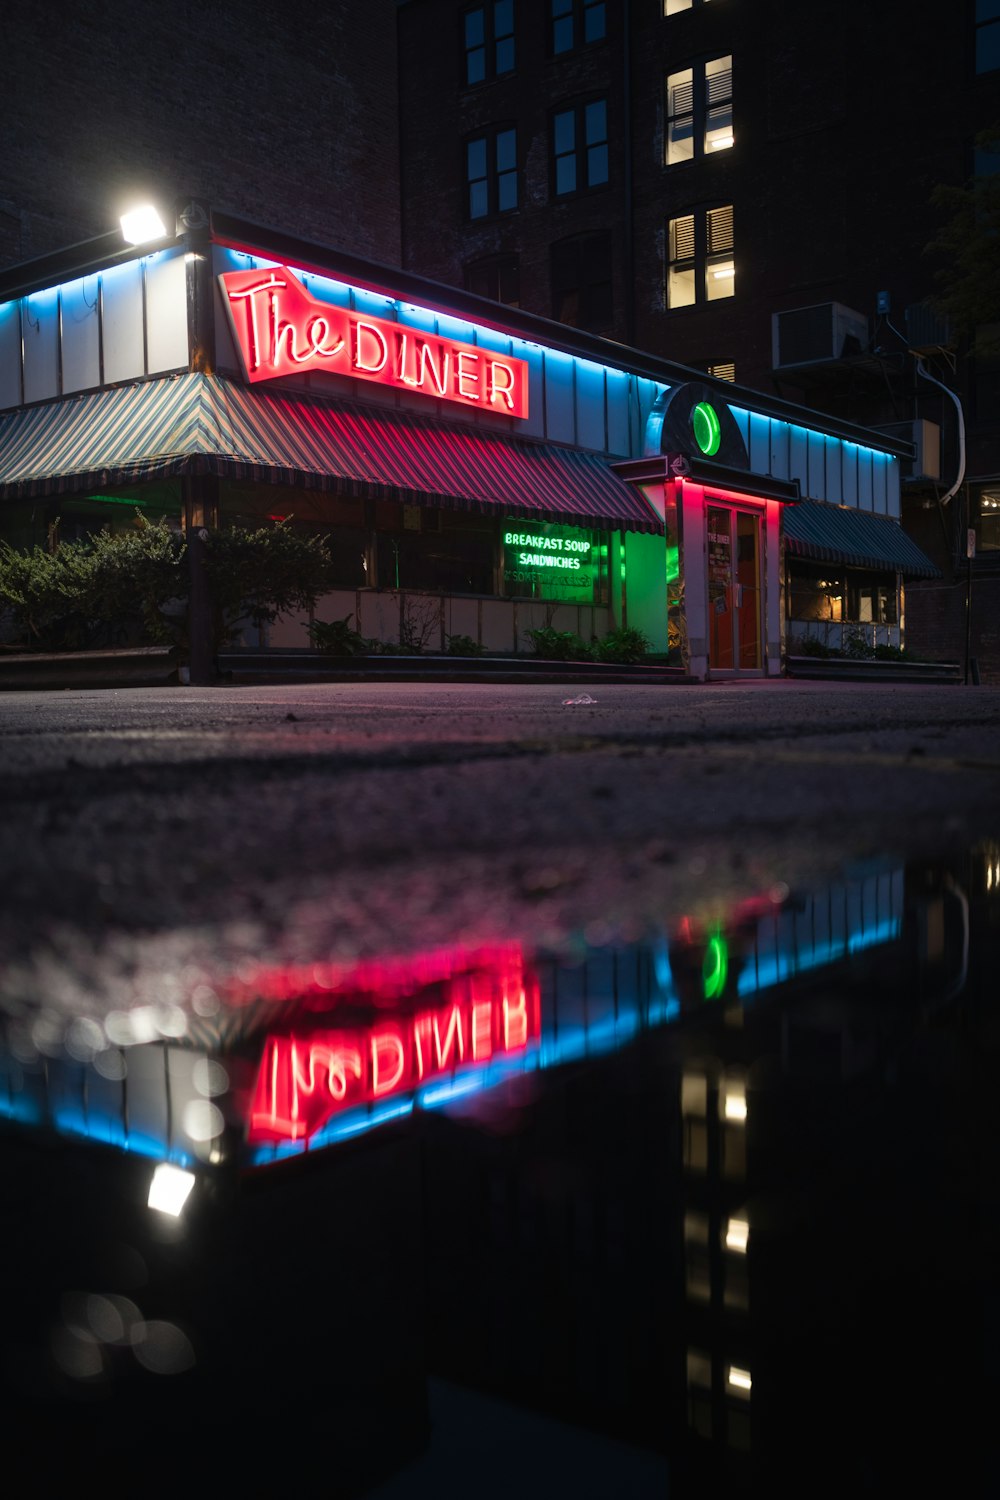 La segnaletica illuminata del Diner